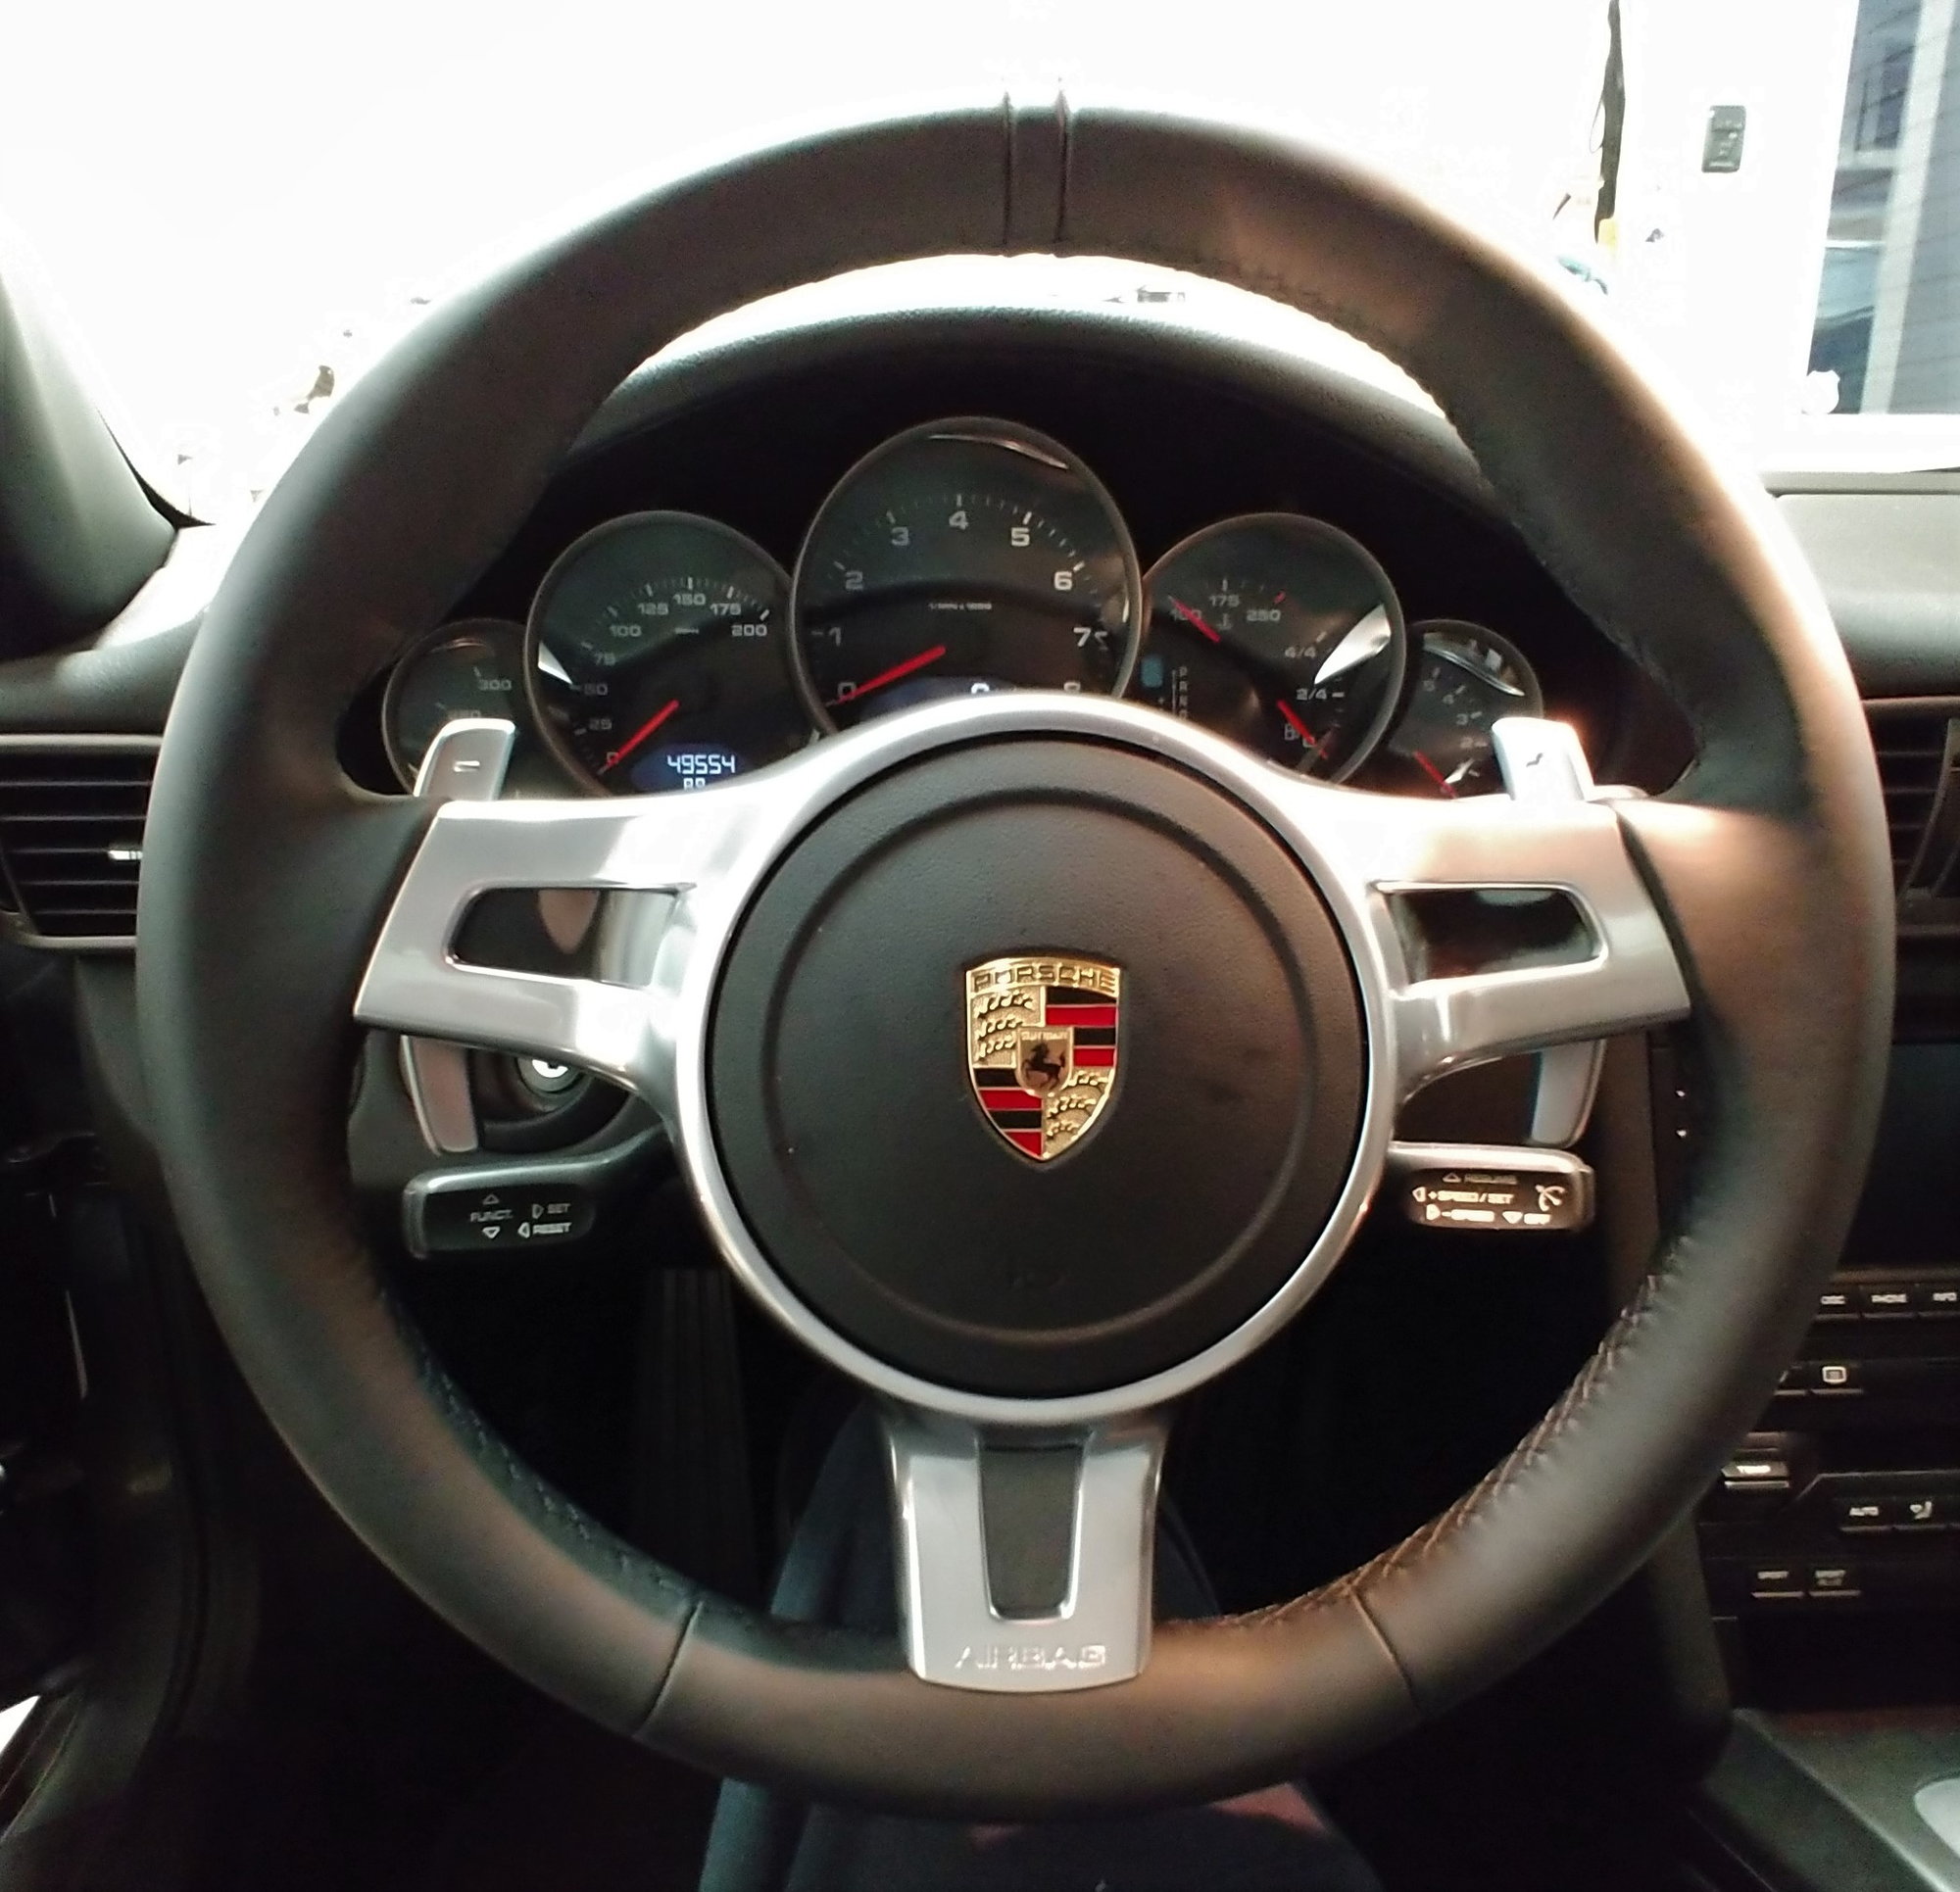 Alcantara Steering wheel refresh? - Page 2 - Rennlist - Porsche